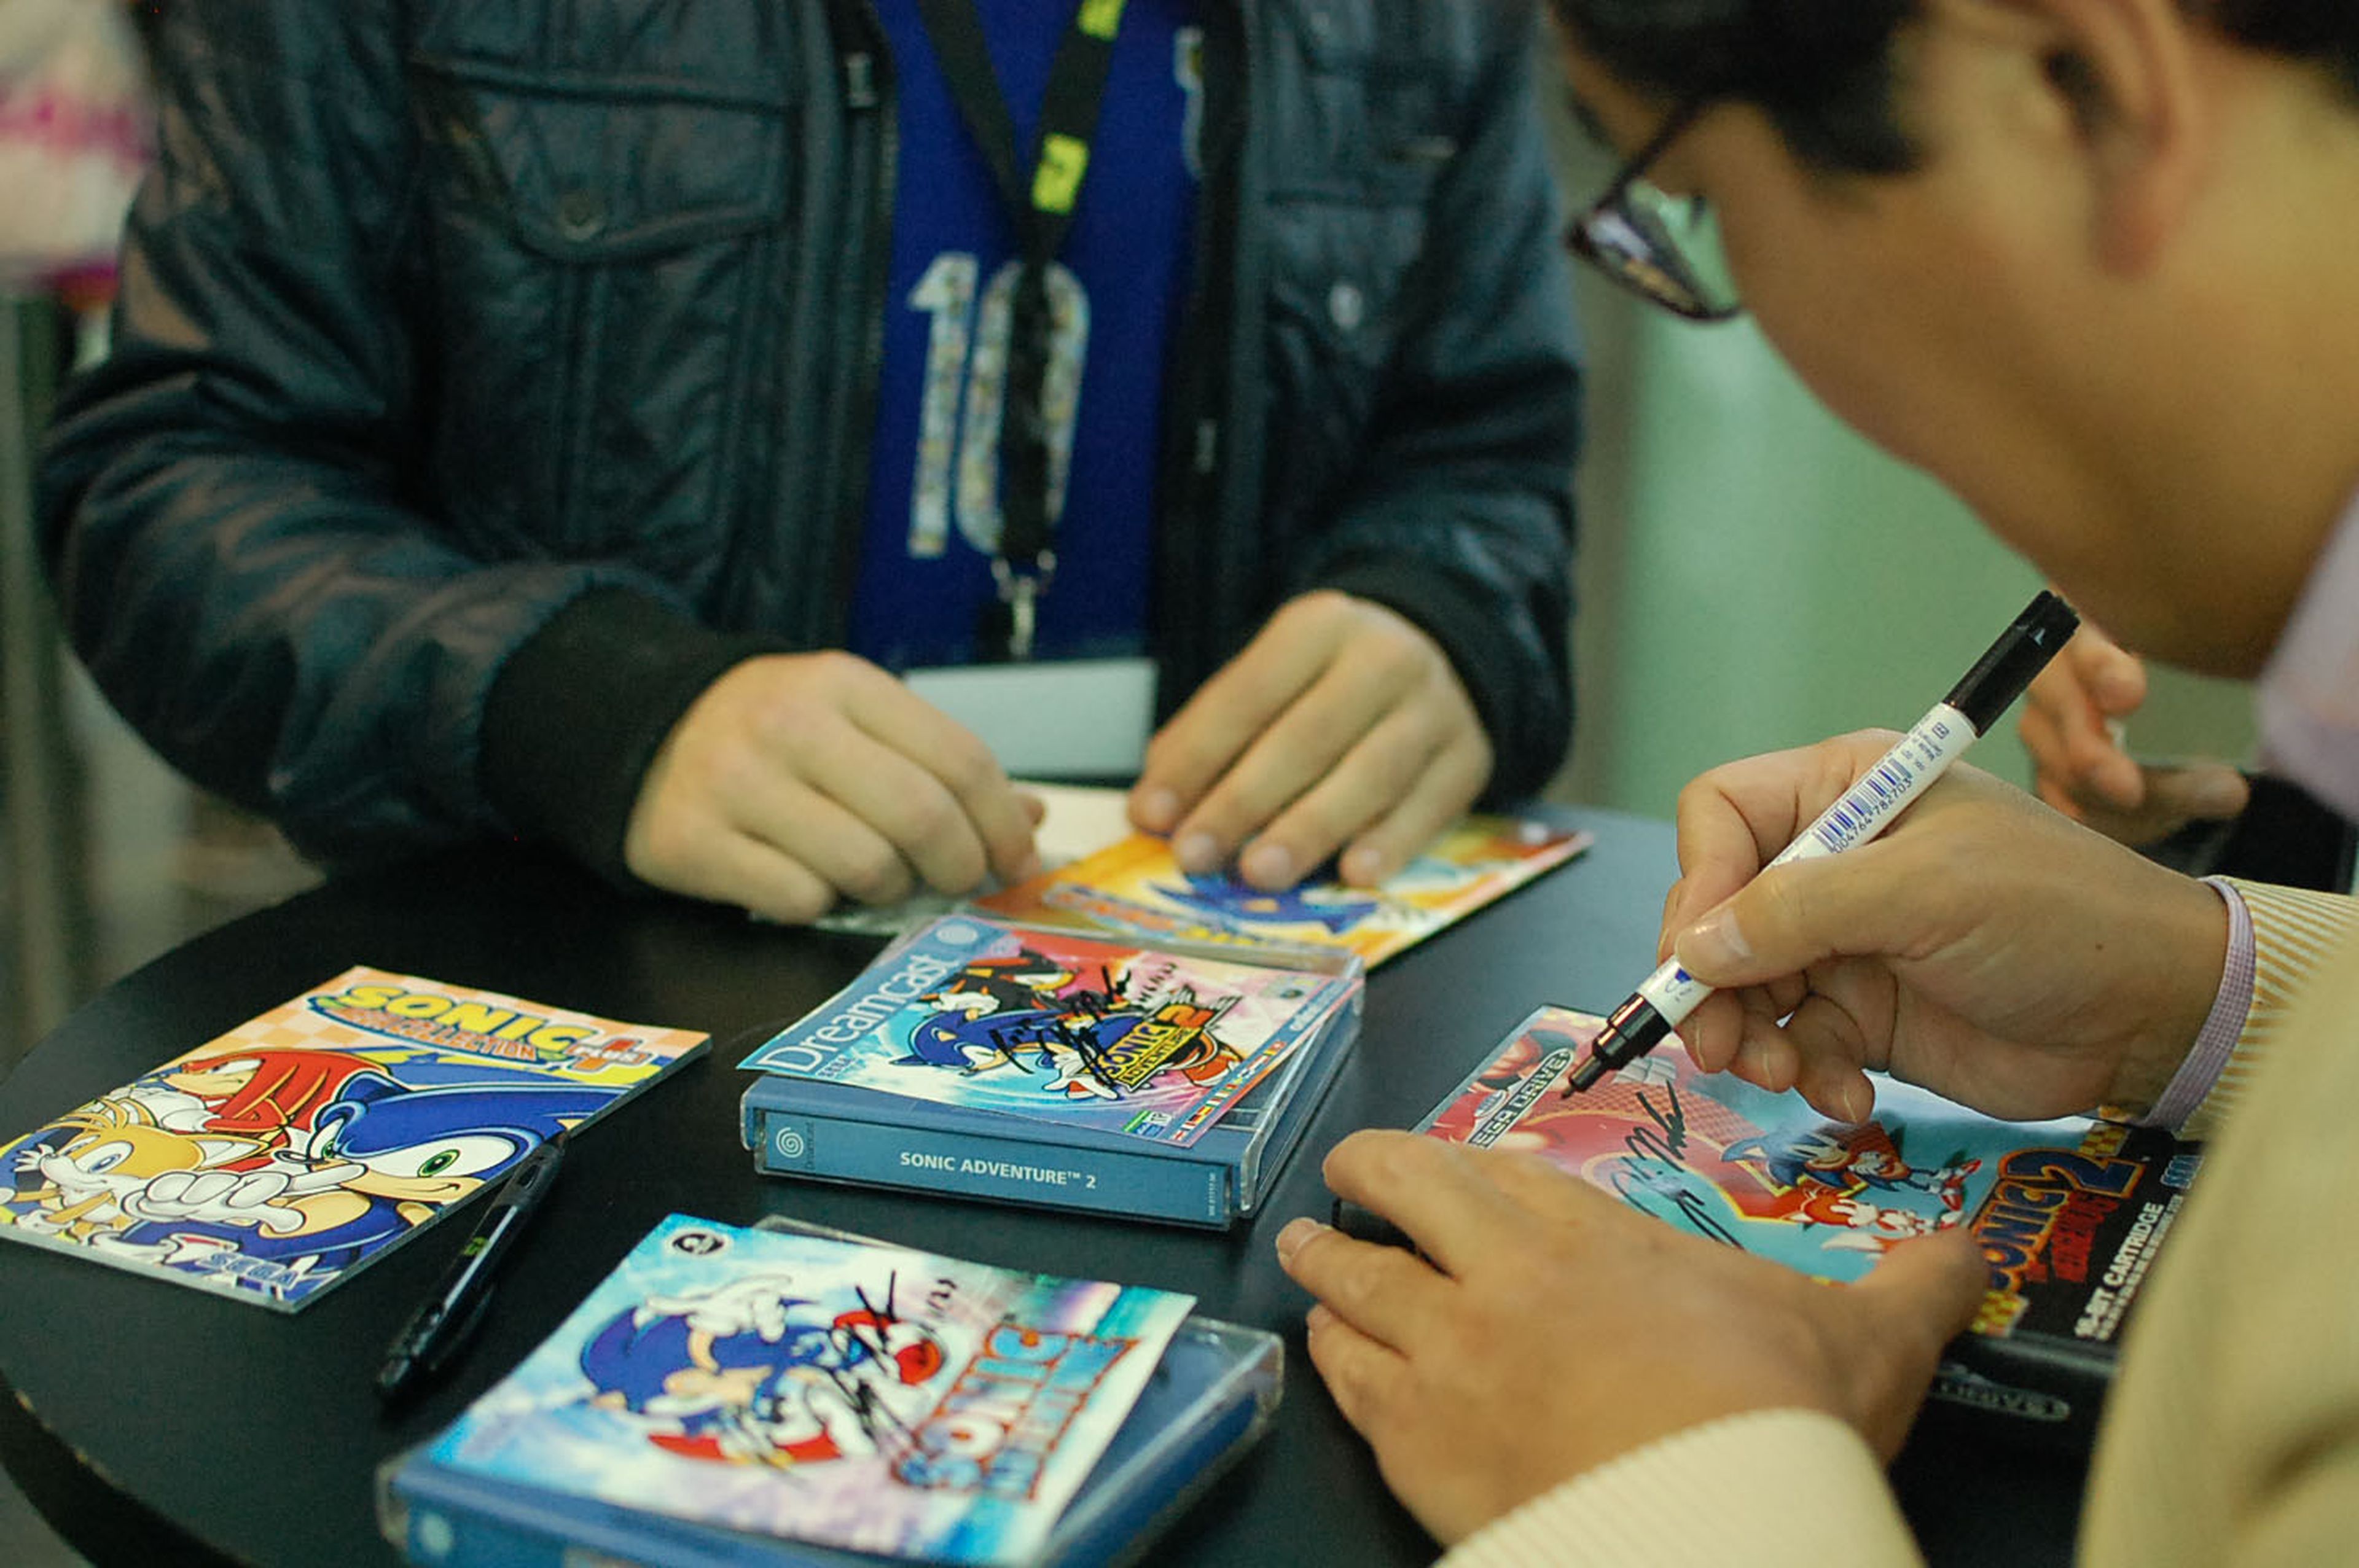 Tras la charla, Yuji Naka firmó todo tipo de juegos y merchandising al público asistente.